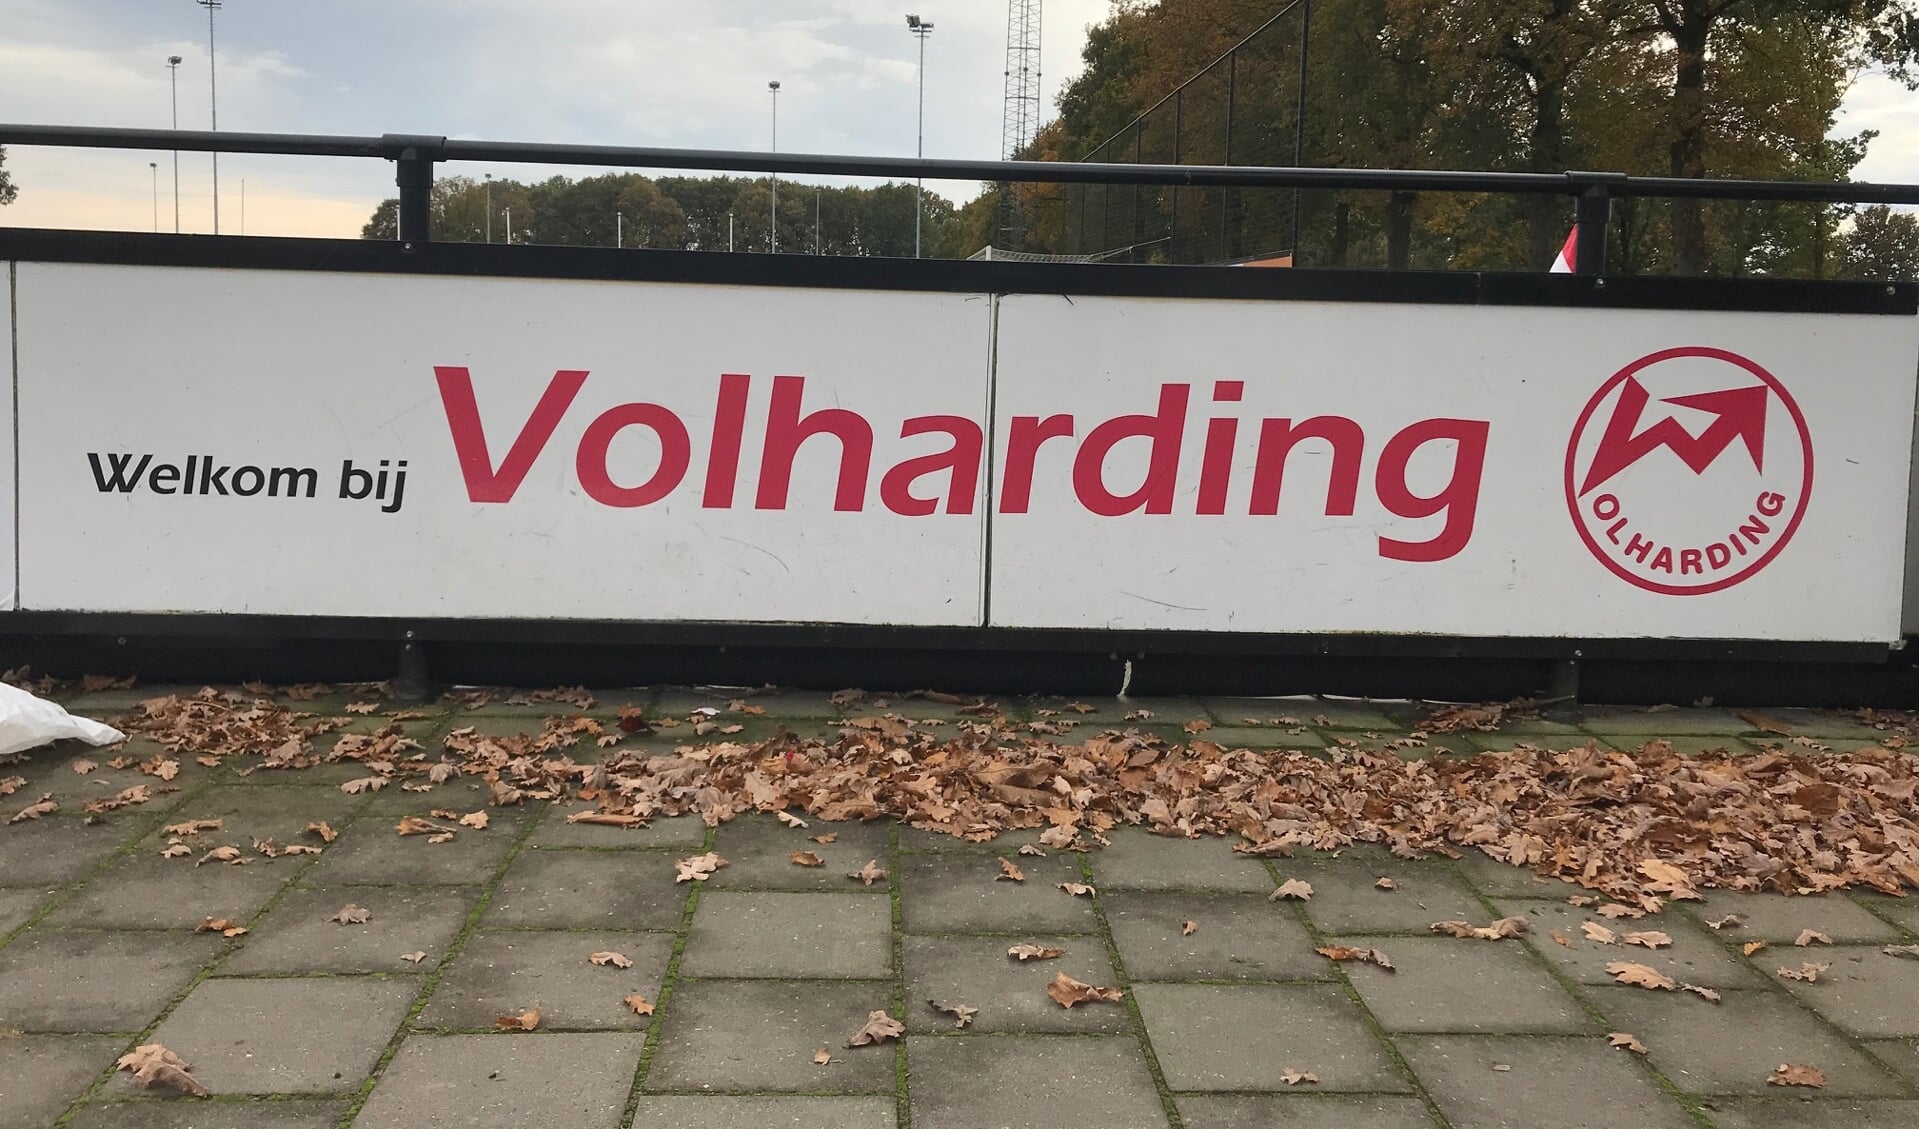 Volharding/ Sambeek begroet belangstellende jeugdspelers graag op de open traingen. 